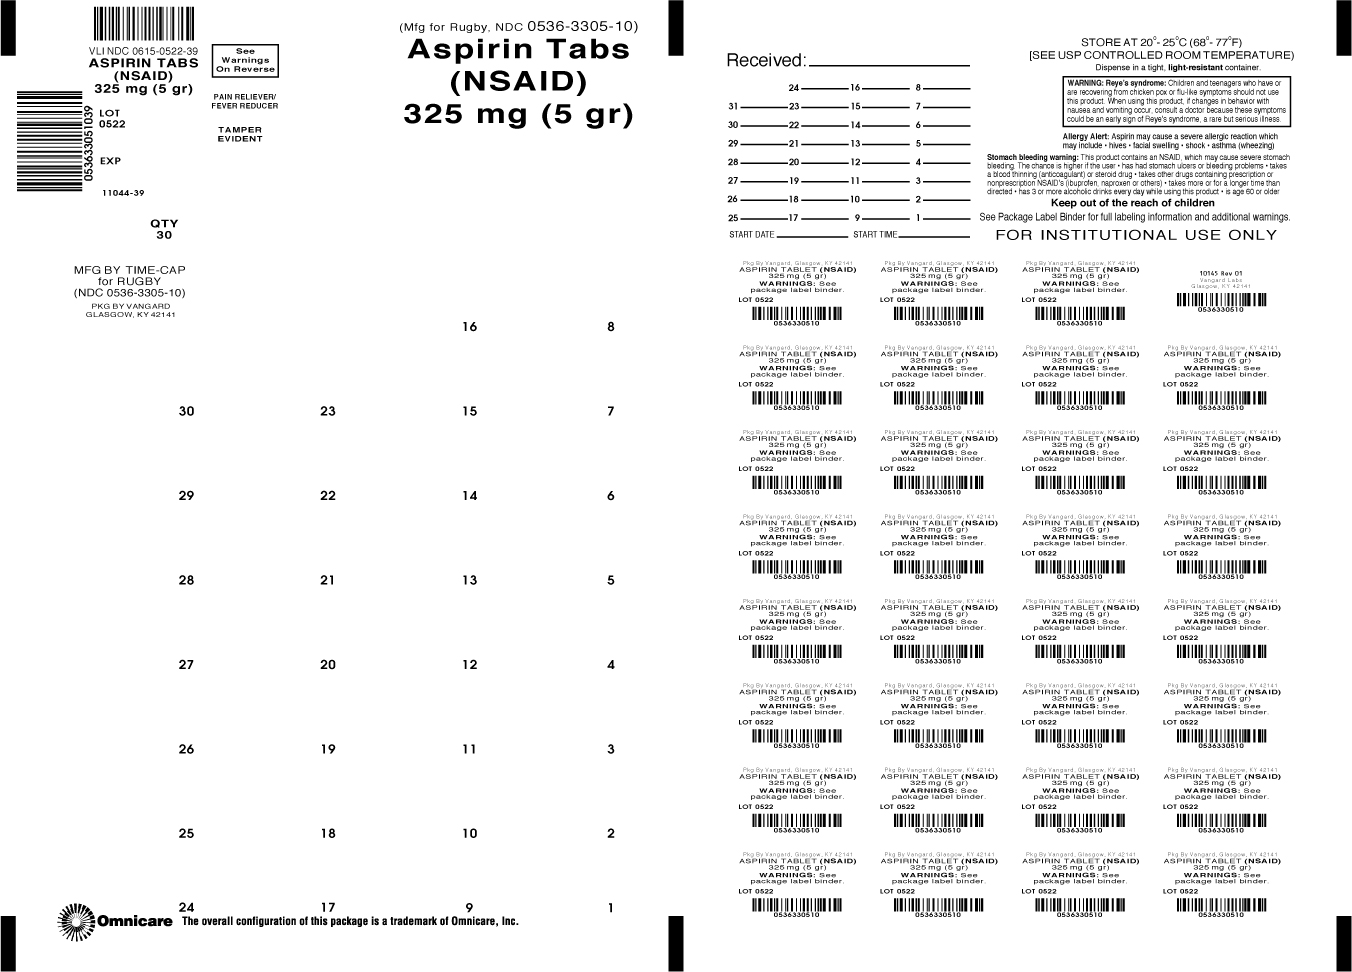 Principal Display Panel-Aspririn Tabs (NSAID) 325mg (5gr)